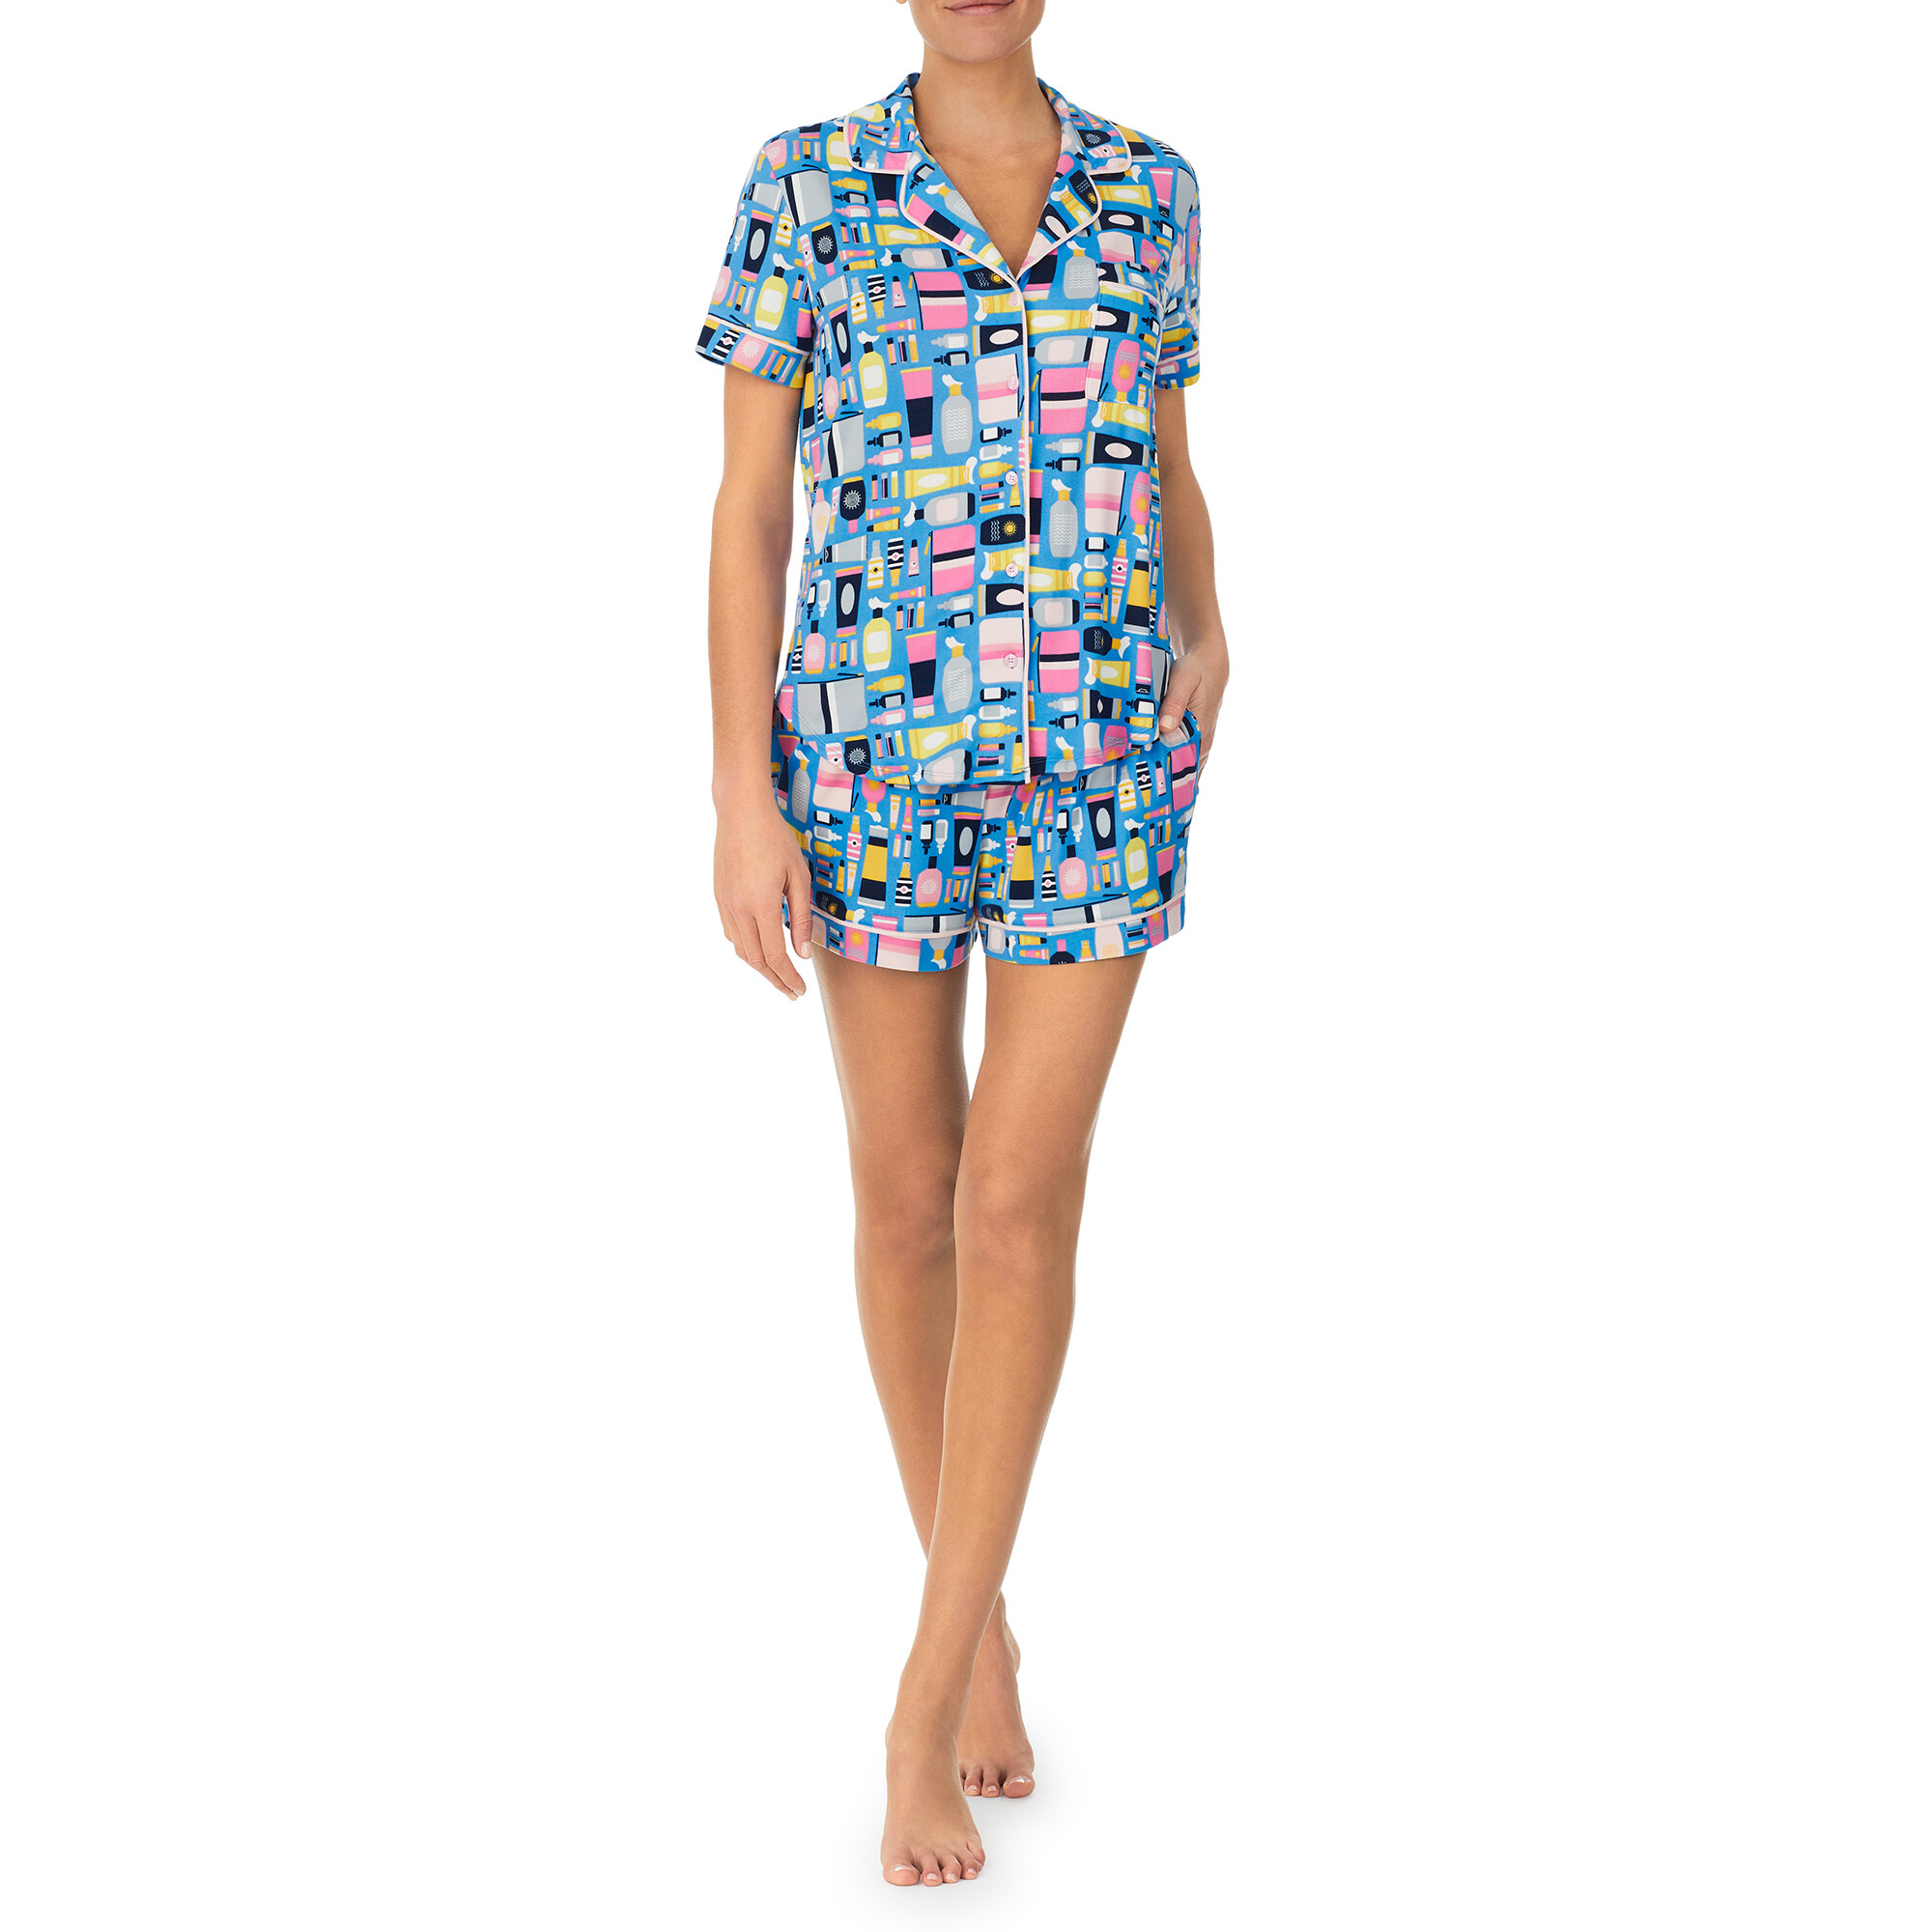 Imbracaminte Femei Kate Spade New York Brushed Jersey Short Sleeve Short PJ Set Beach Essentials